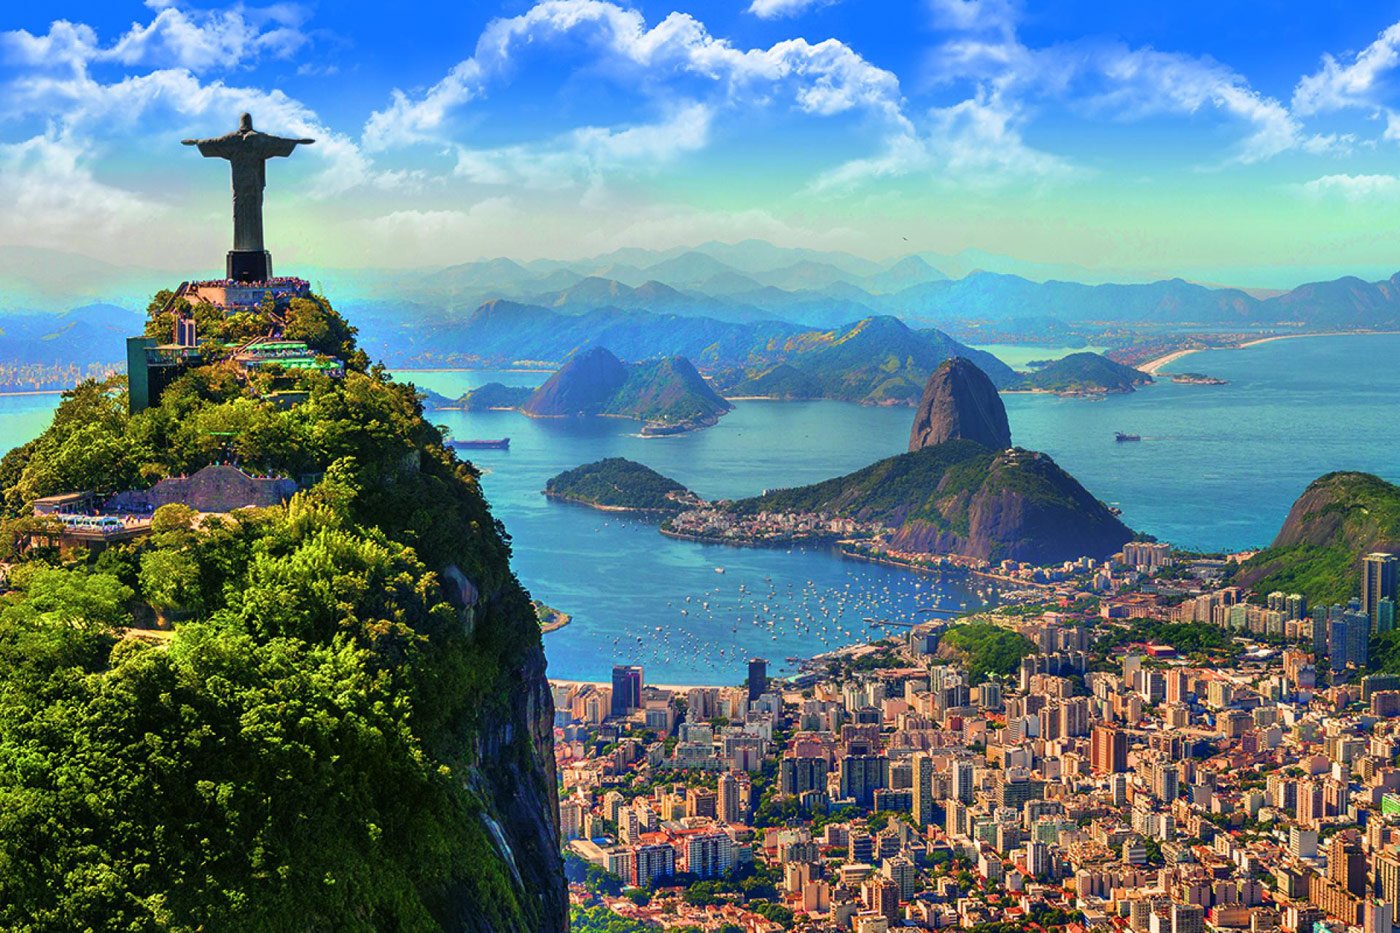 Популярные туристические города. Бразилия Рио де Жанейро. Южная Америка Рио де Жанейро. Рио-де-Жанейро столица Бразилии. Достопримечательности Рио-де-Жанейро Бразилия.